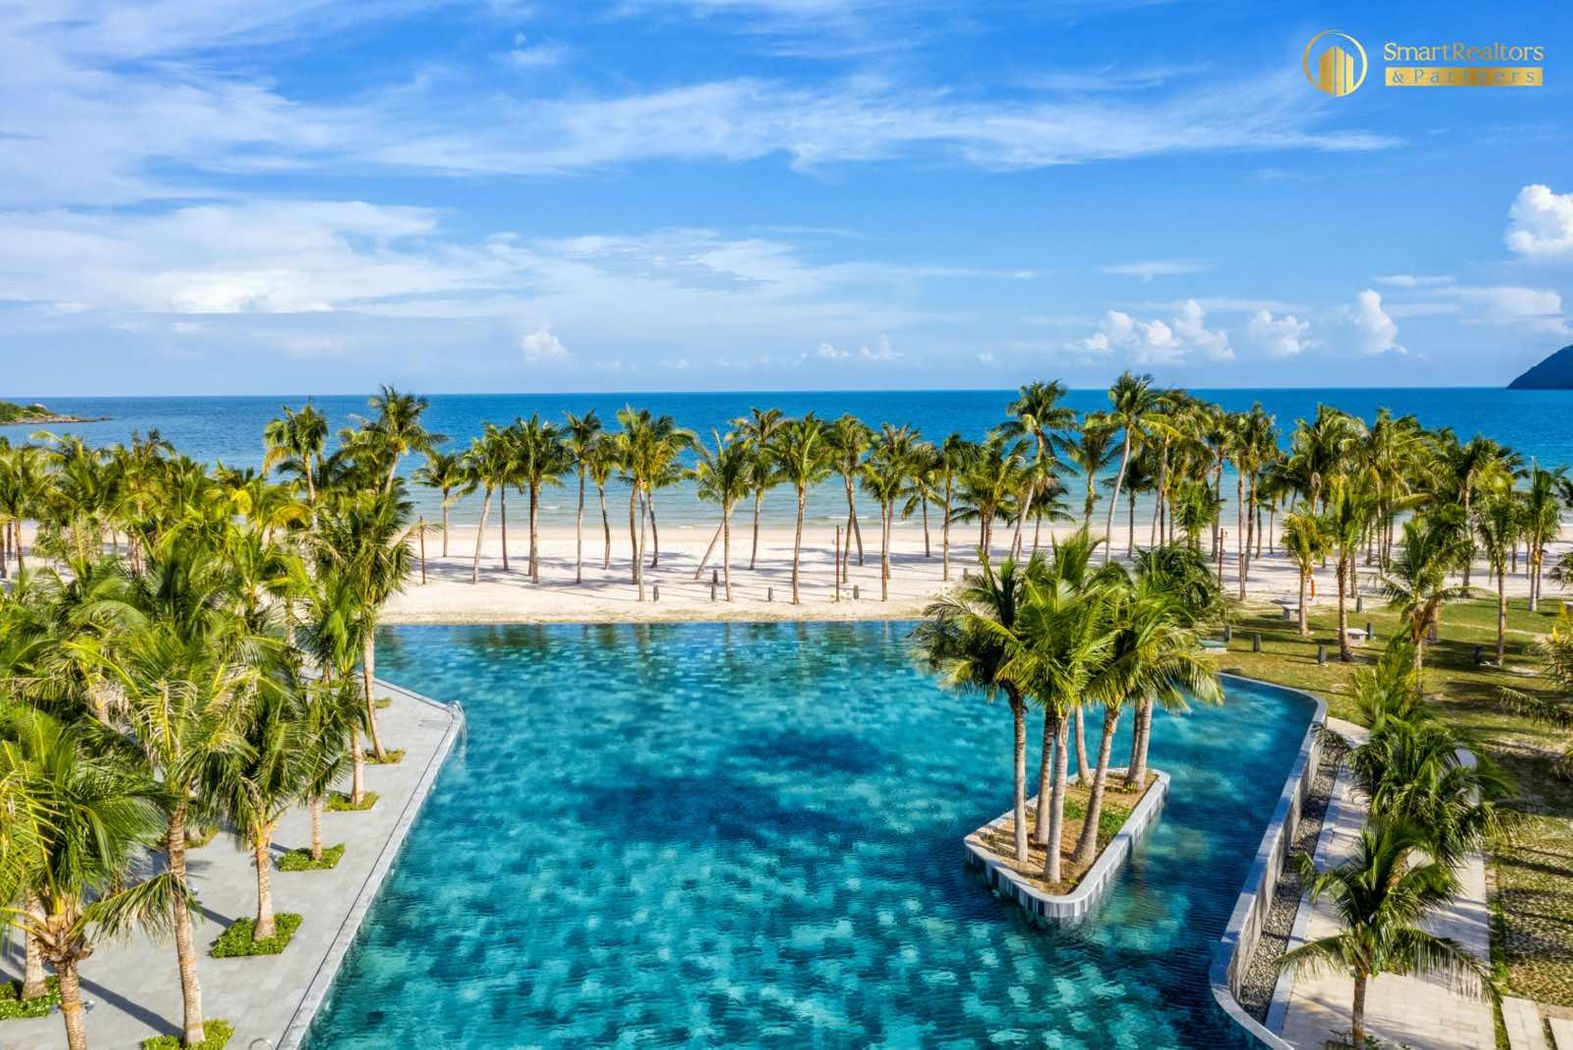 Biệt thự New World Phu Quoc Resort Bãi Kem khai trương từ Tháng 1/2021